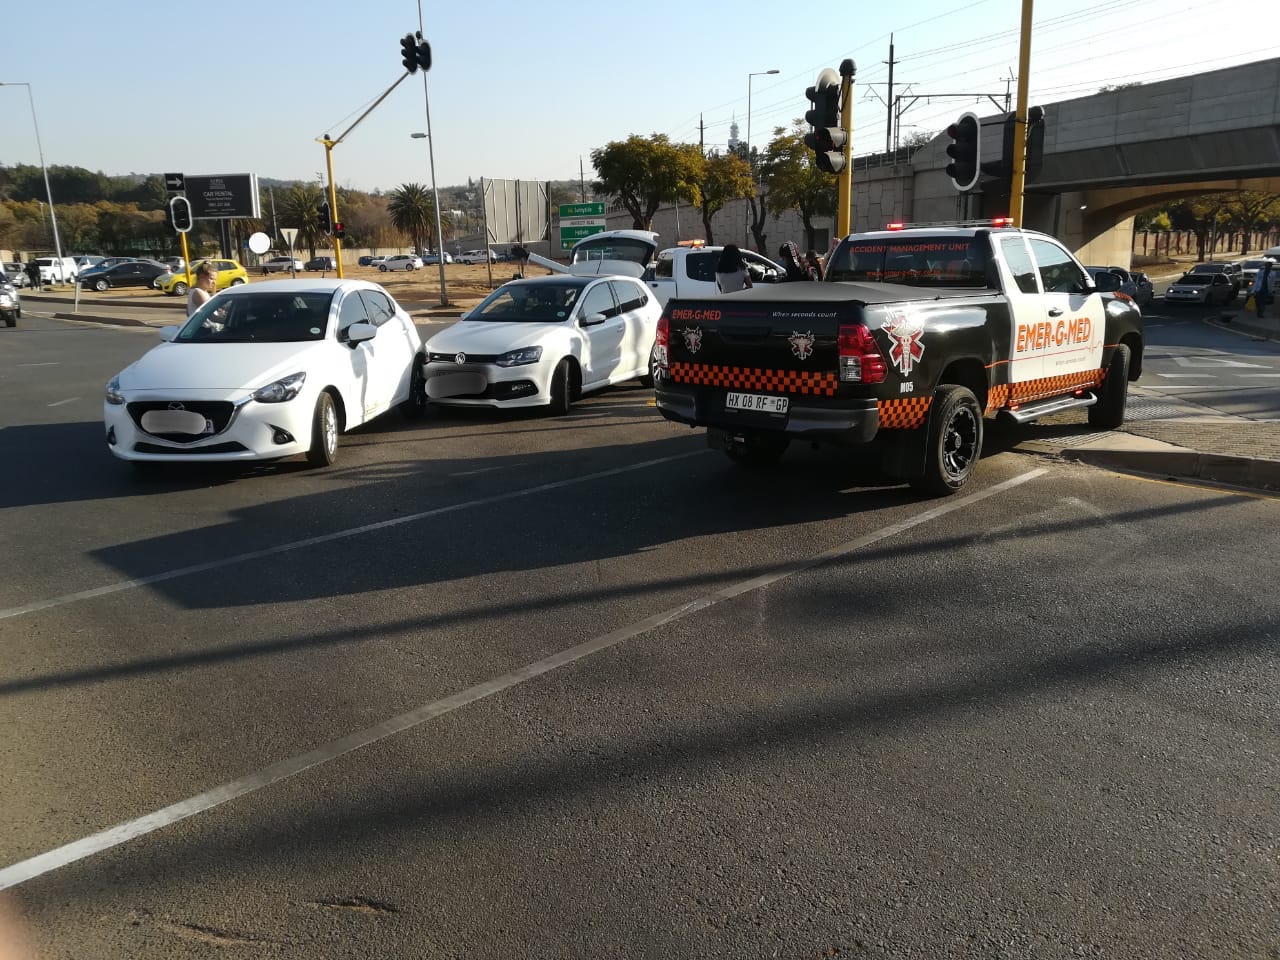 Collision at intersection in Pretoria